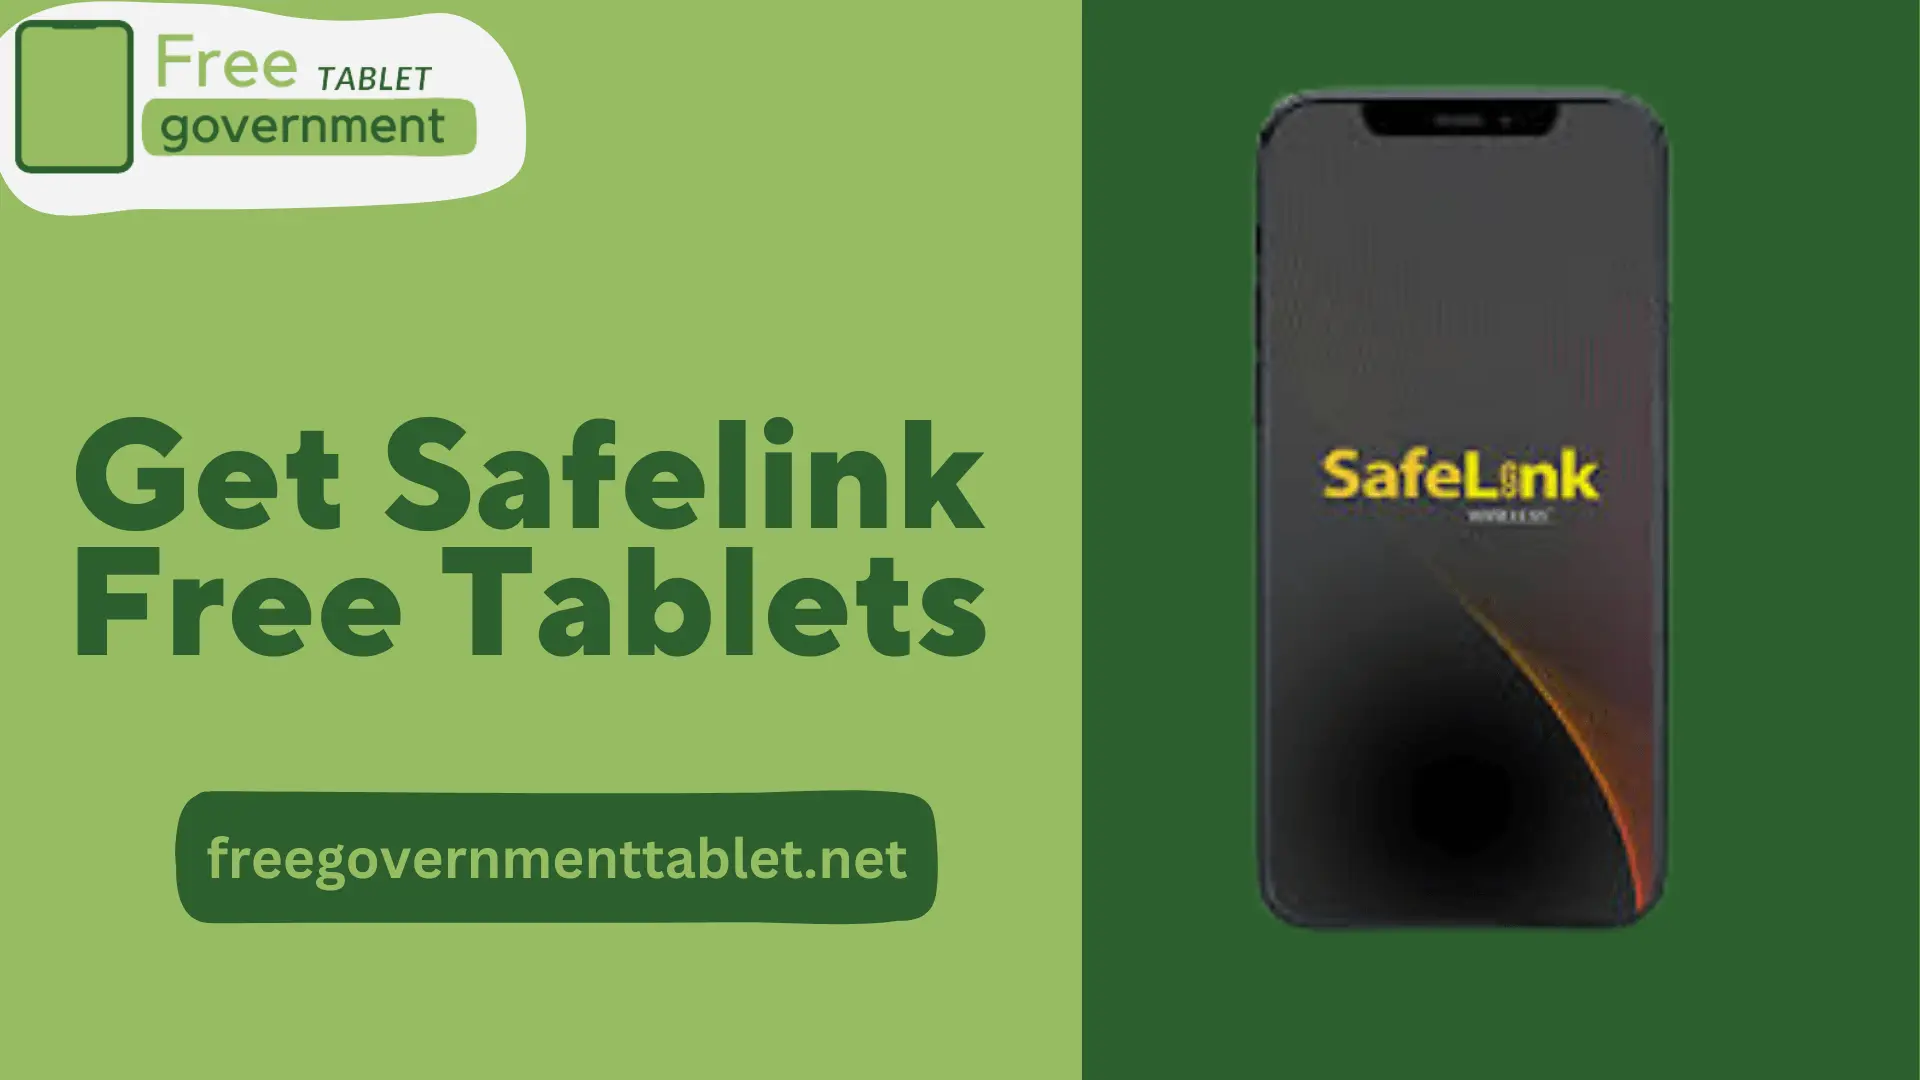 How to Get Safelink Free Tablets